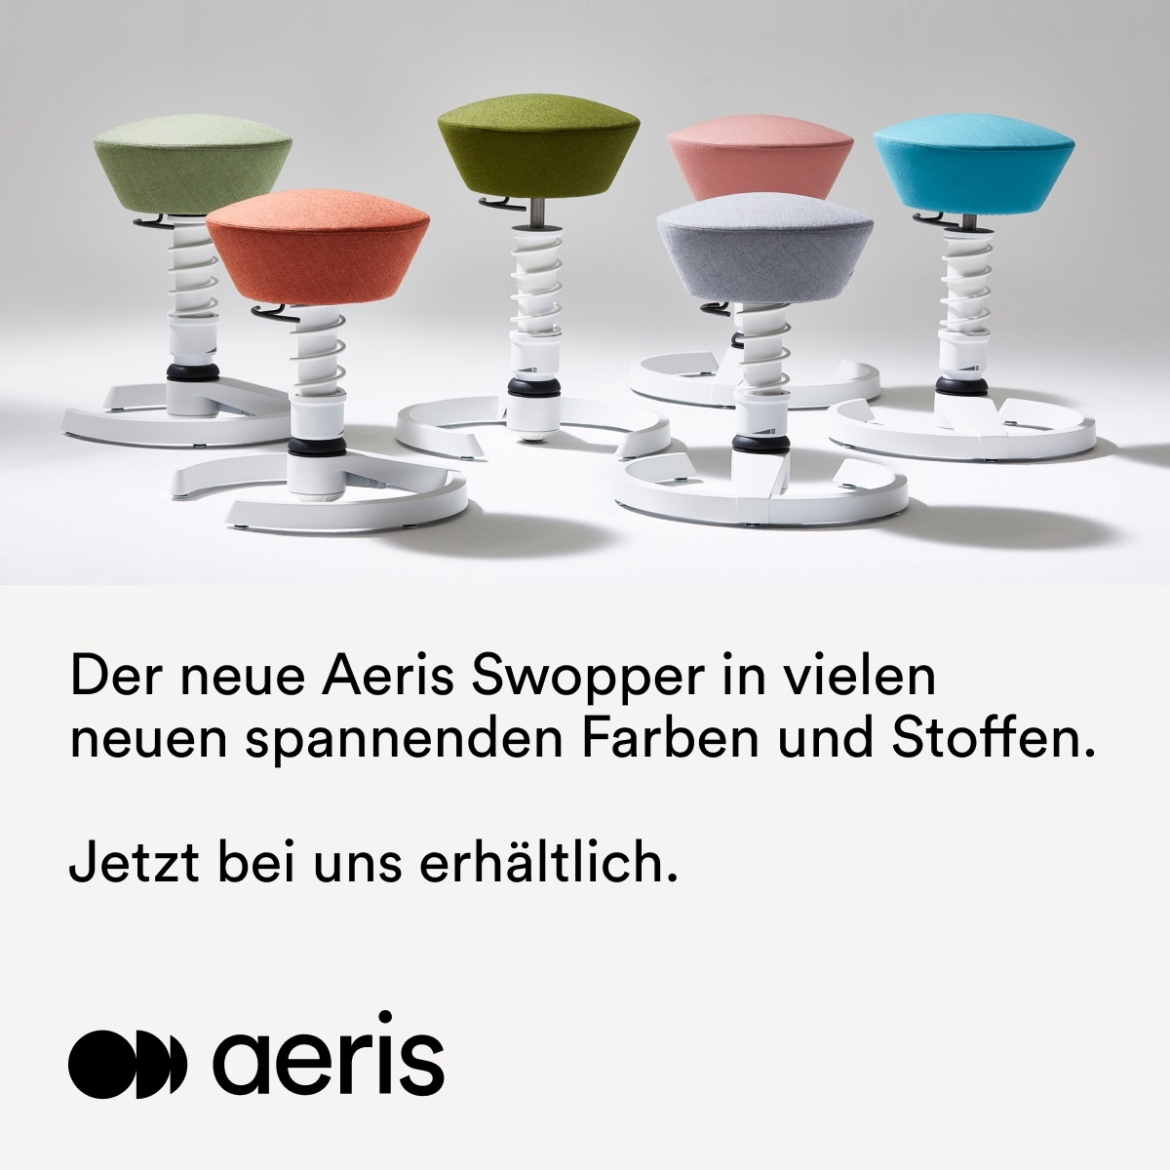 Aeris Swopper Aktionswochen – Lorenz + Ulmer GmbH